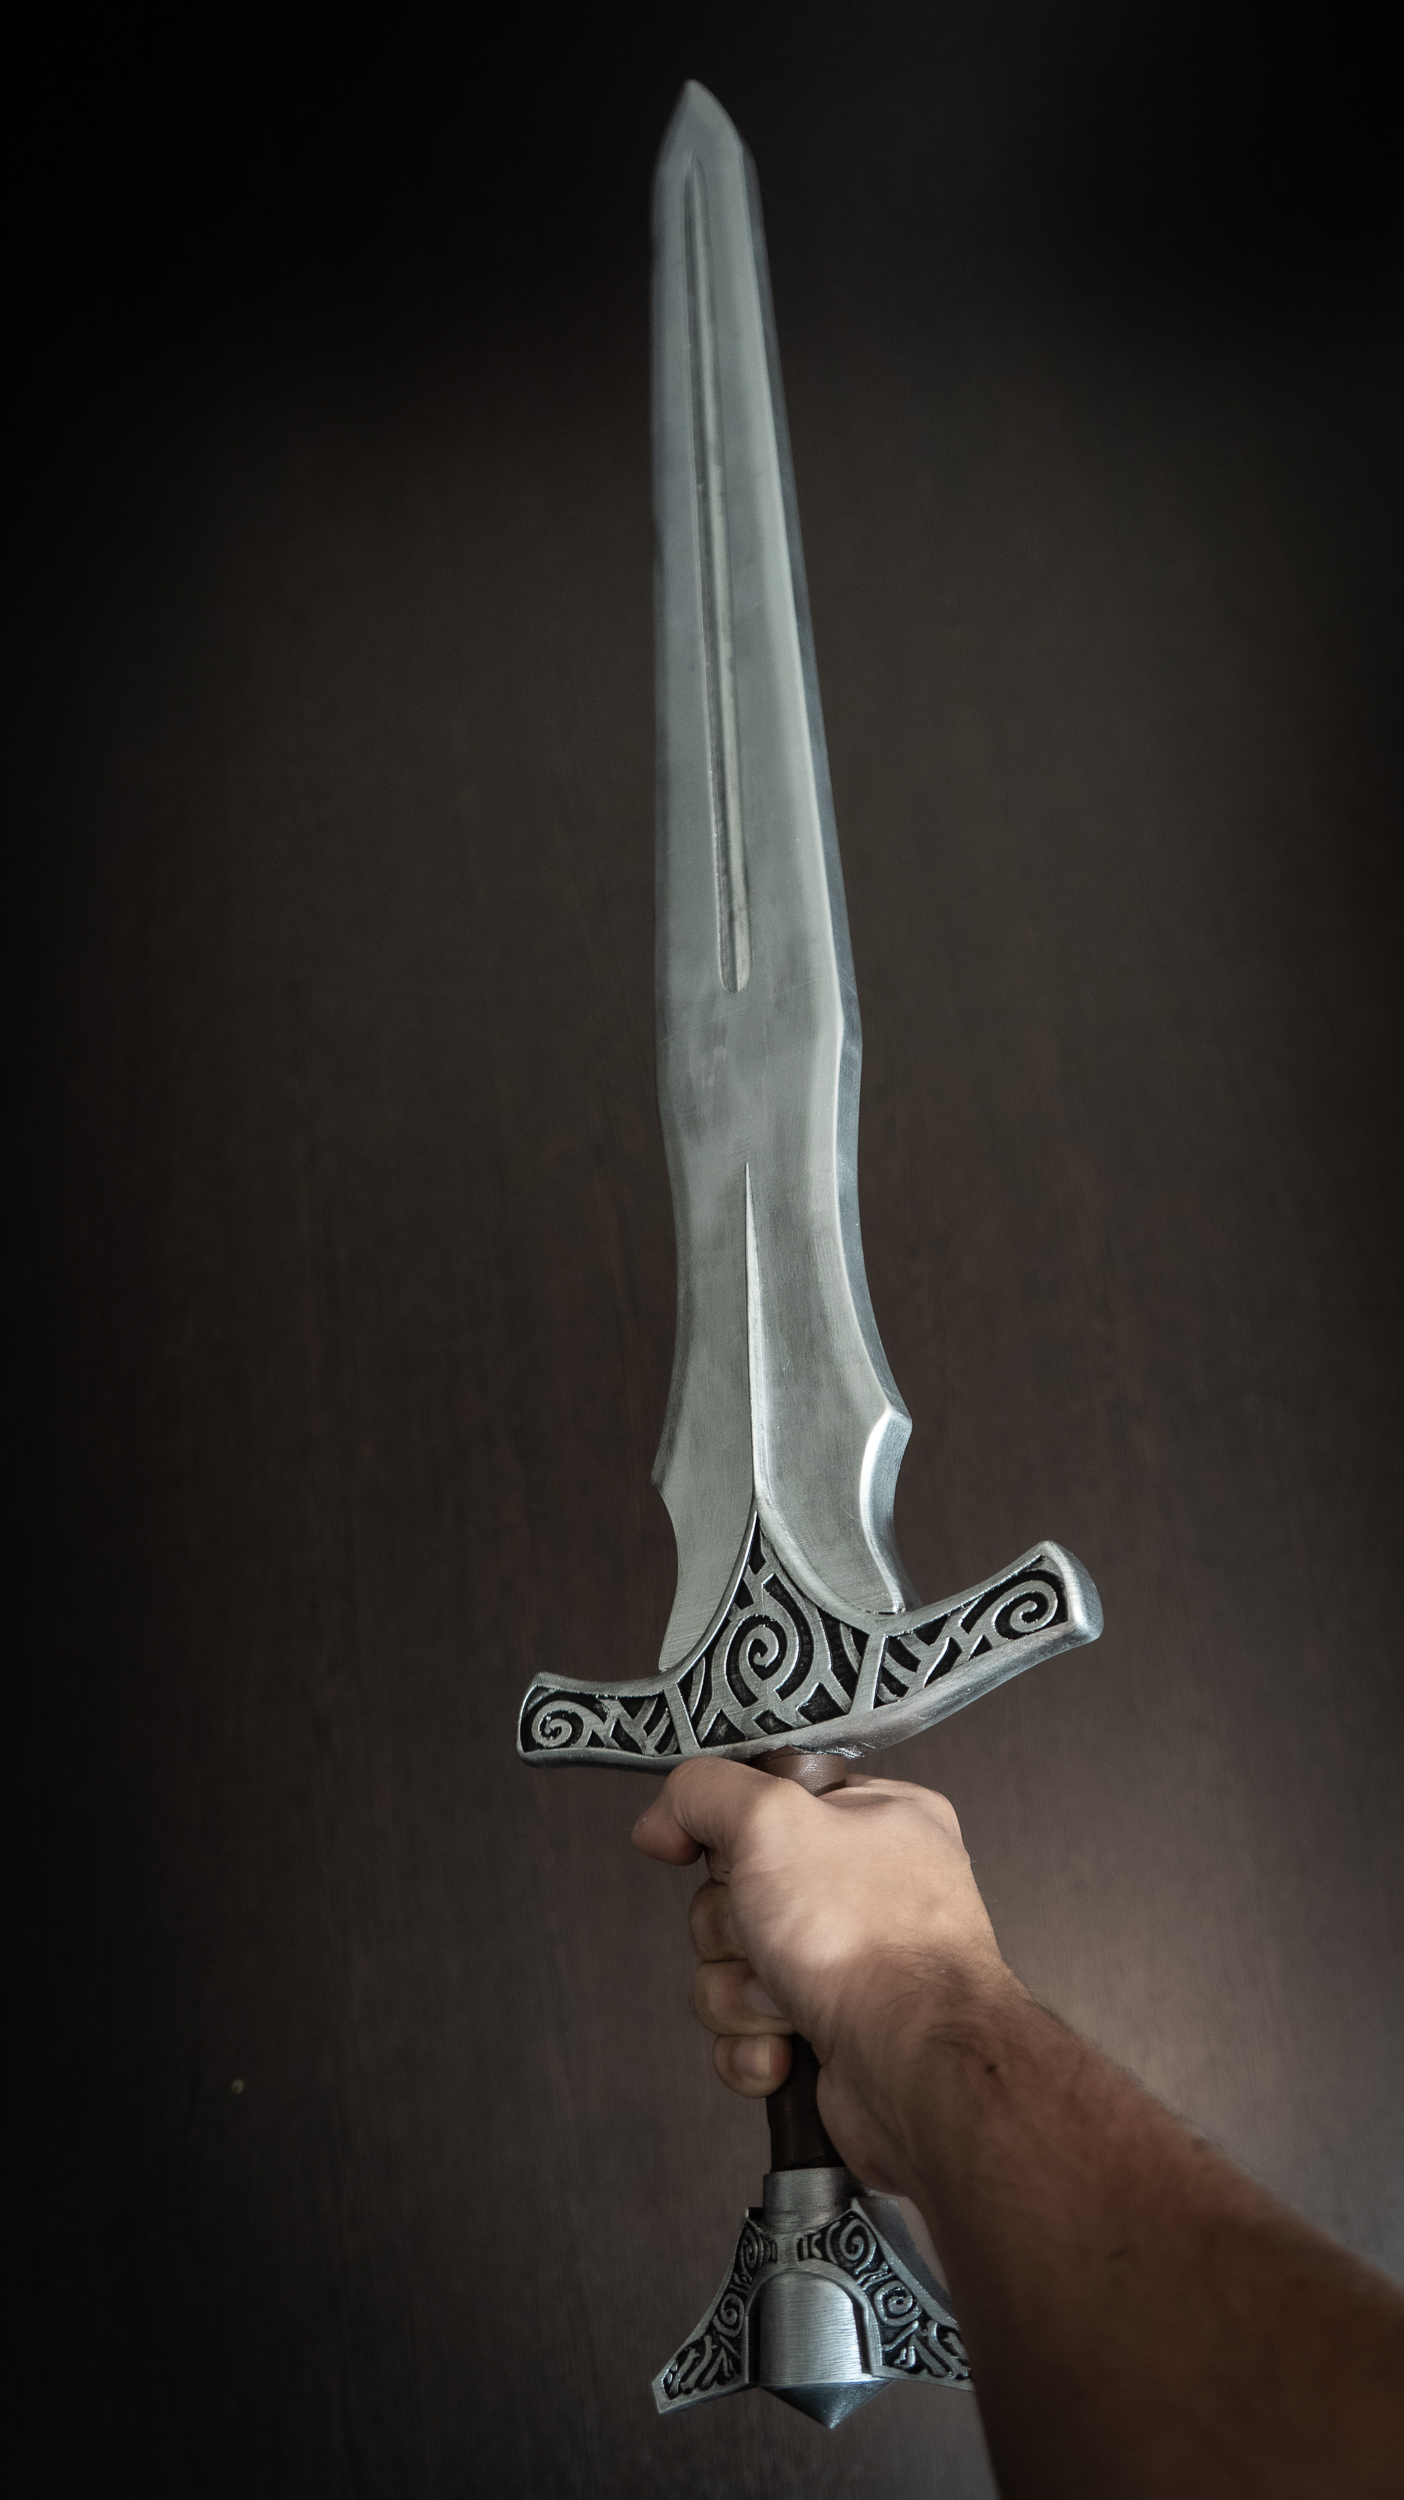 skyrim sword designs